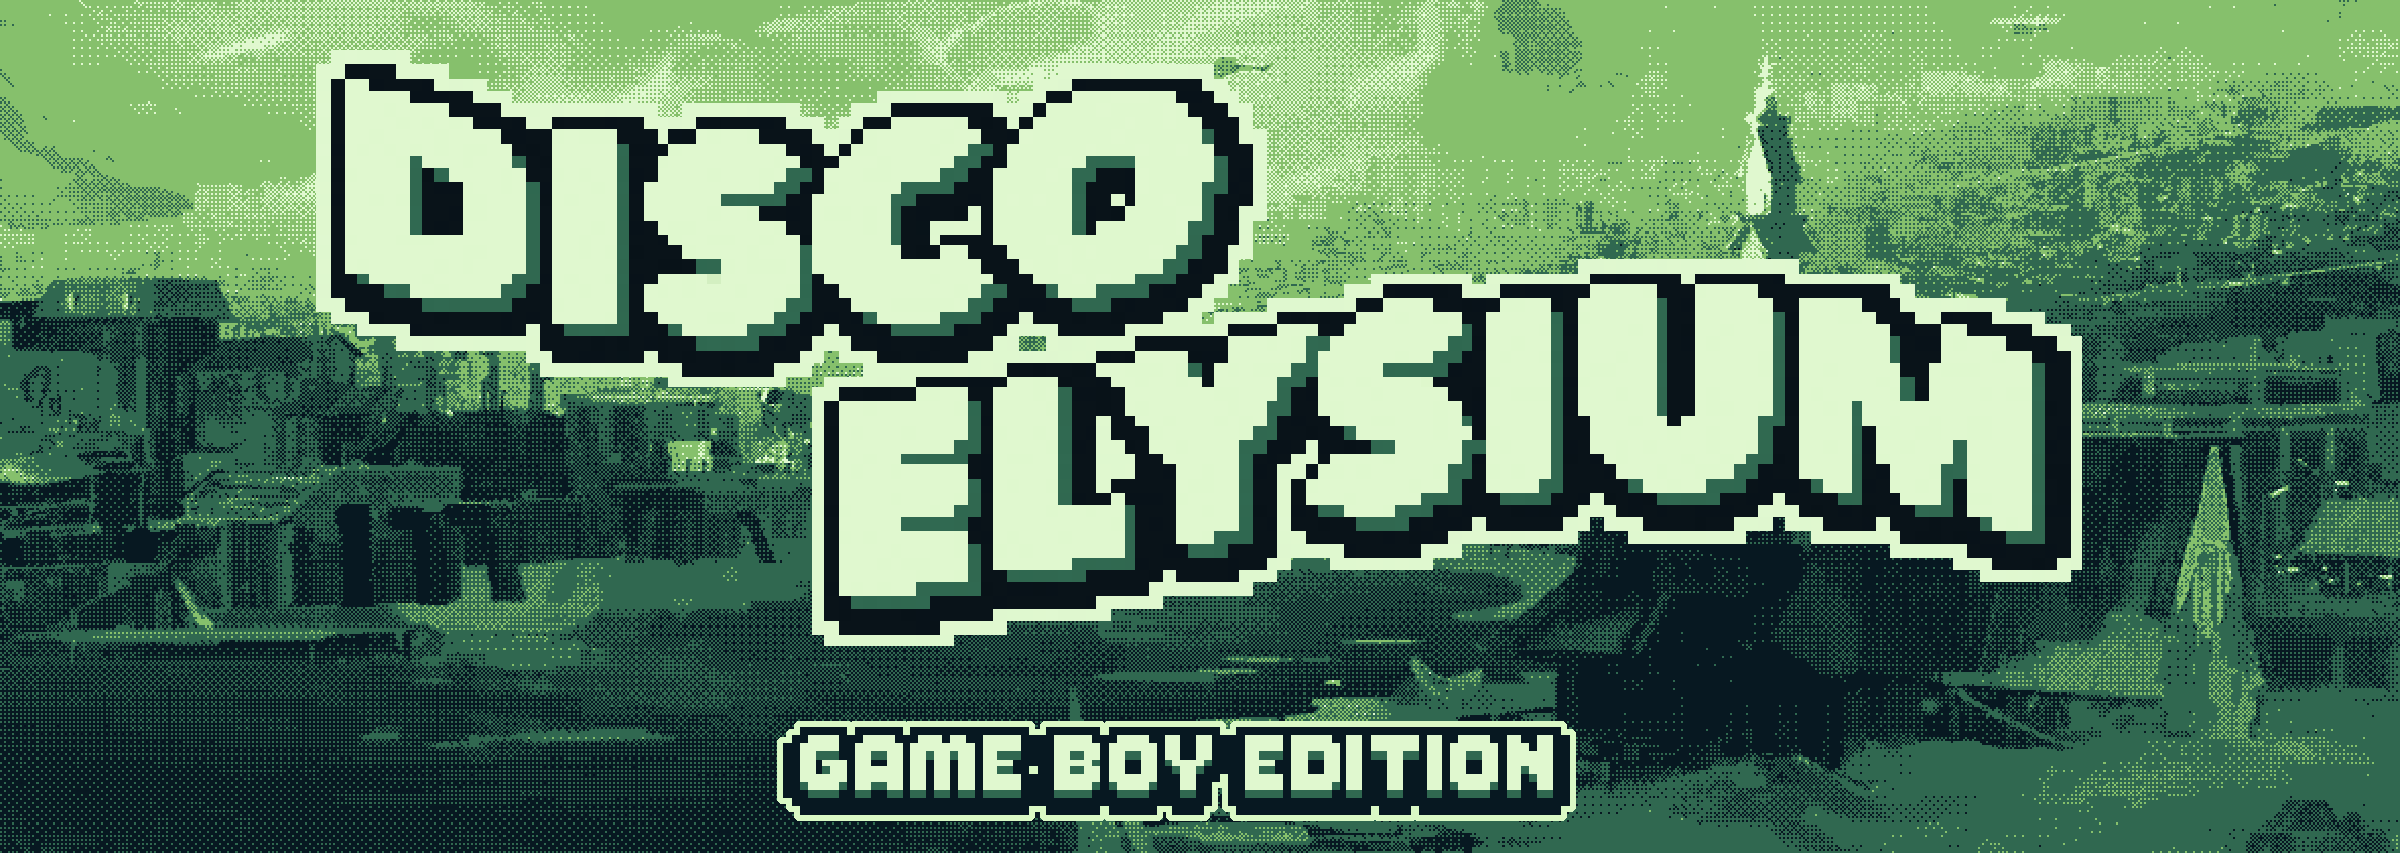 GameBoy版《极乐迪斯科》横空出世 可游玩原版第一天内容